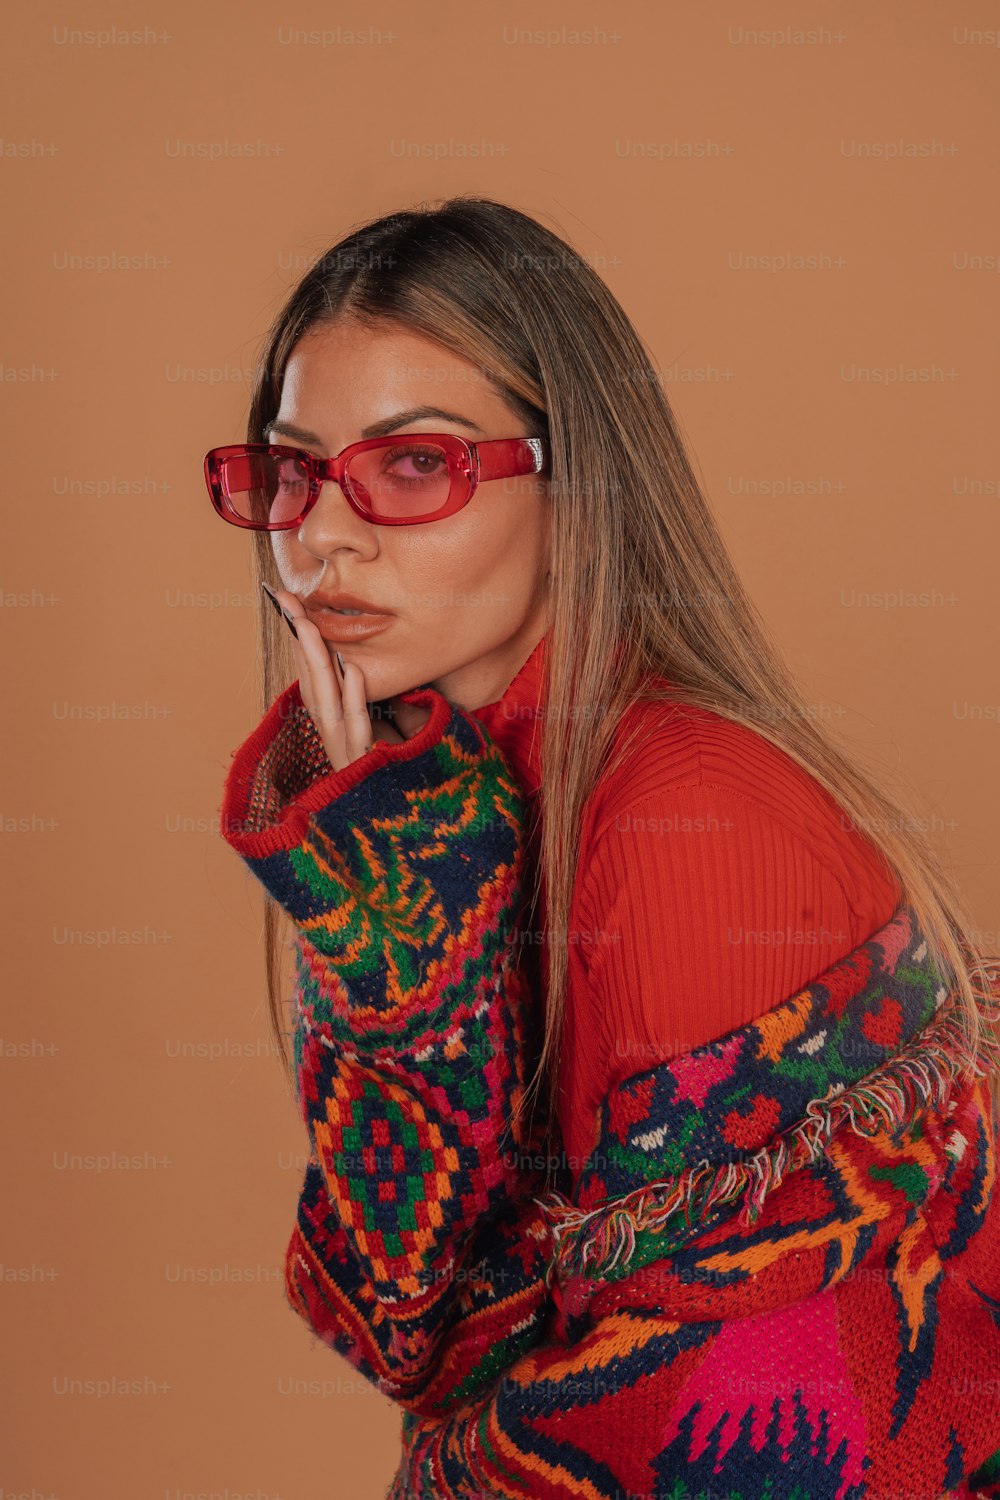 Une femme portant des lunettes rouges et un pull coloré